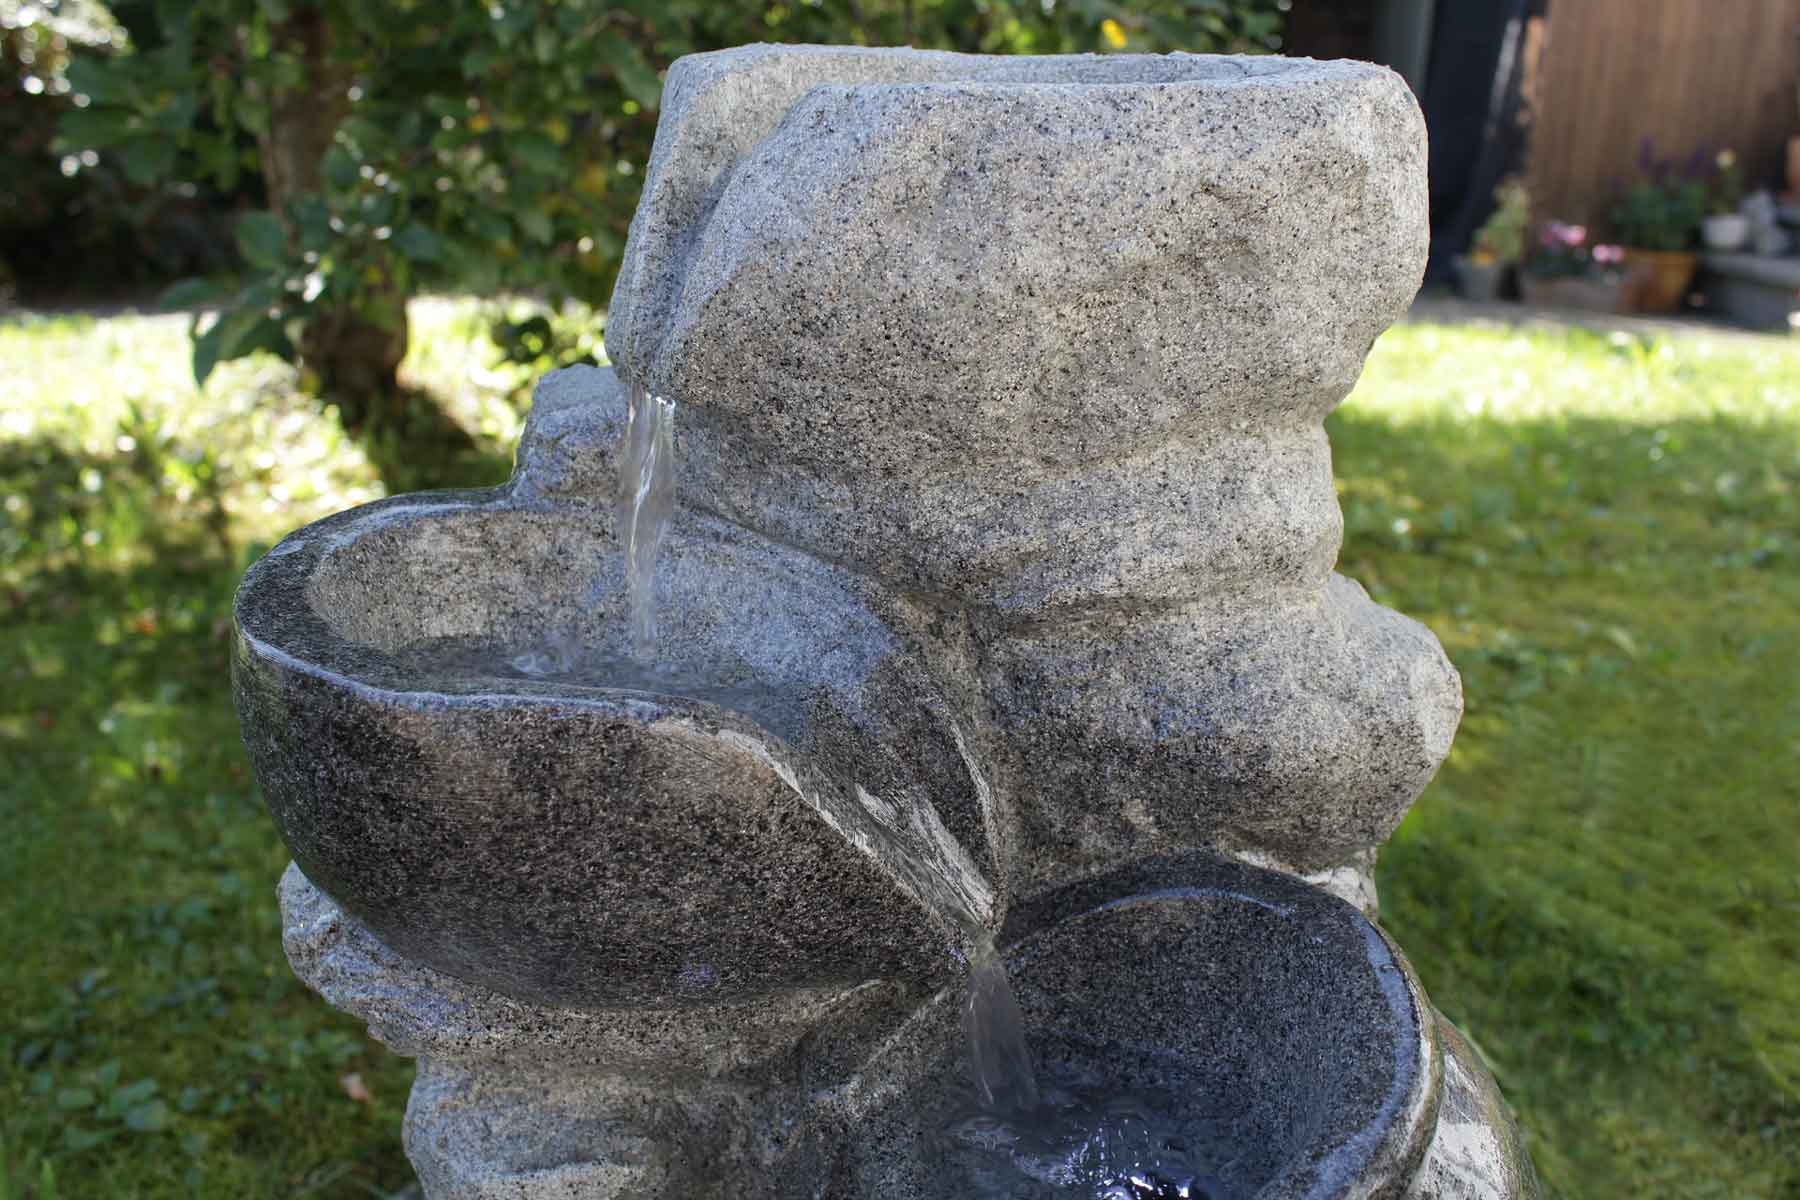 KIOM FoArenaria 10899 69 cm Led Gartenbrunnen tageslichtweiß